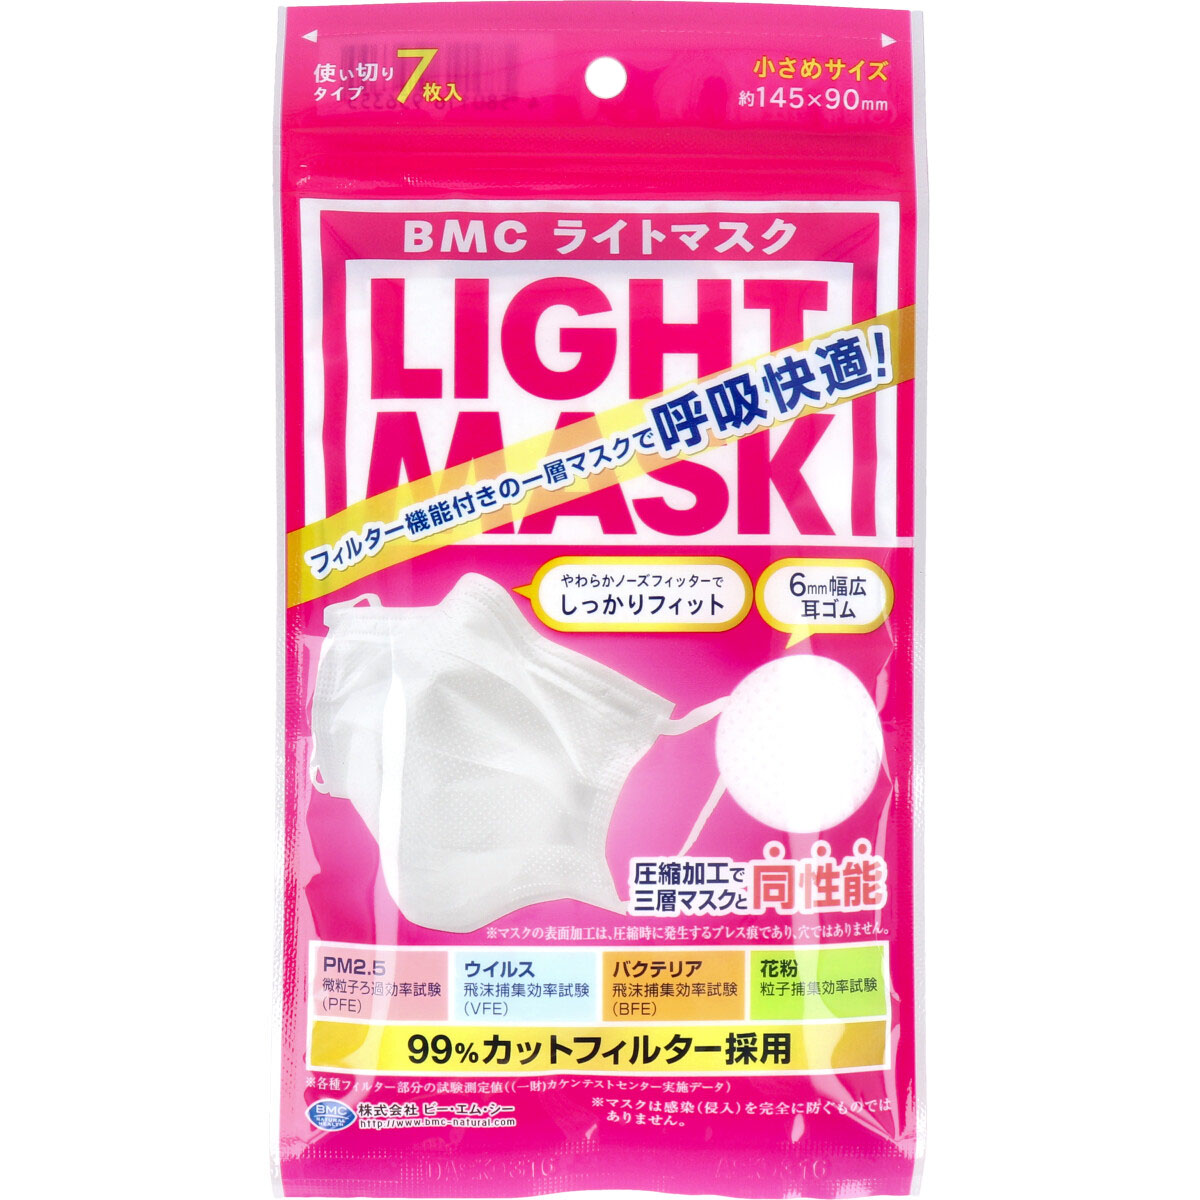 BMC ビー・エム・シー ライトマスク 小さめサイズ ホワイト 7枚入×20個 衛生用品マスクの商品画像